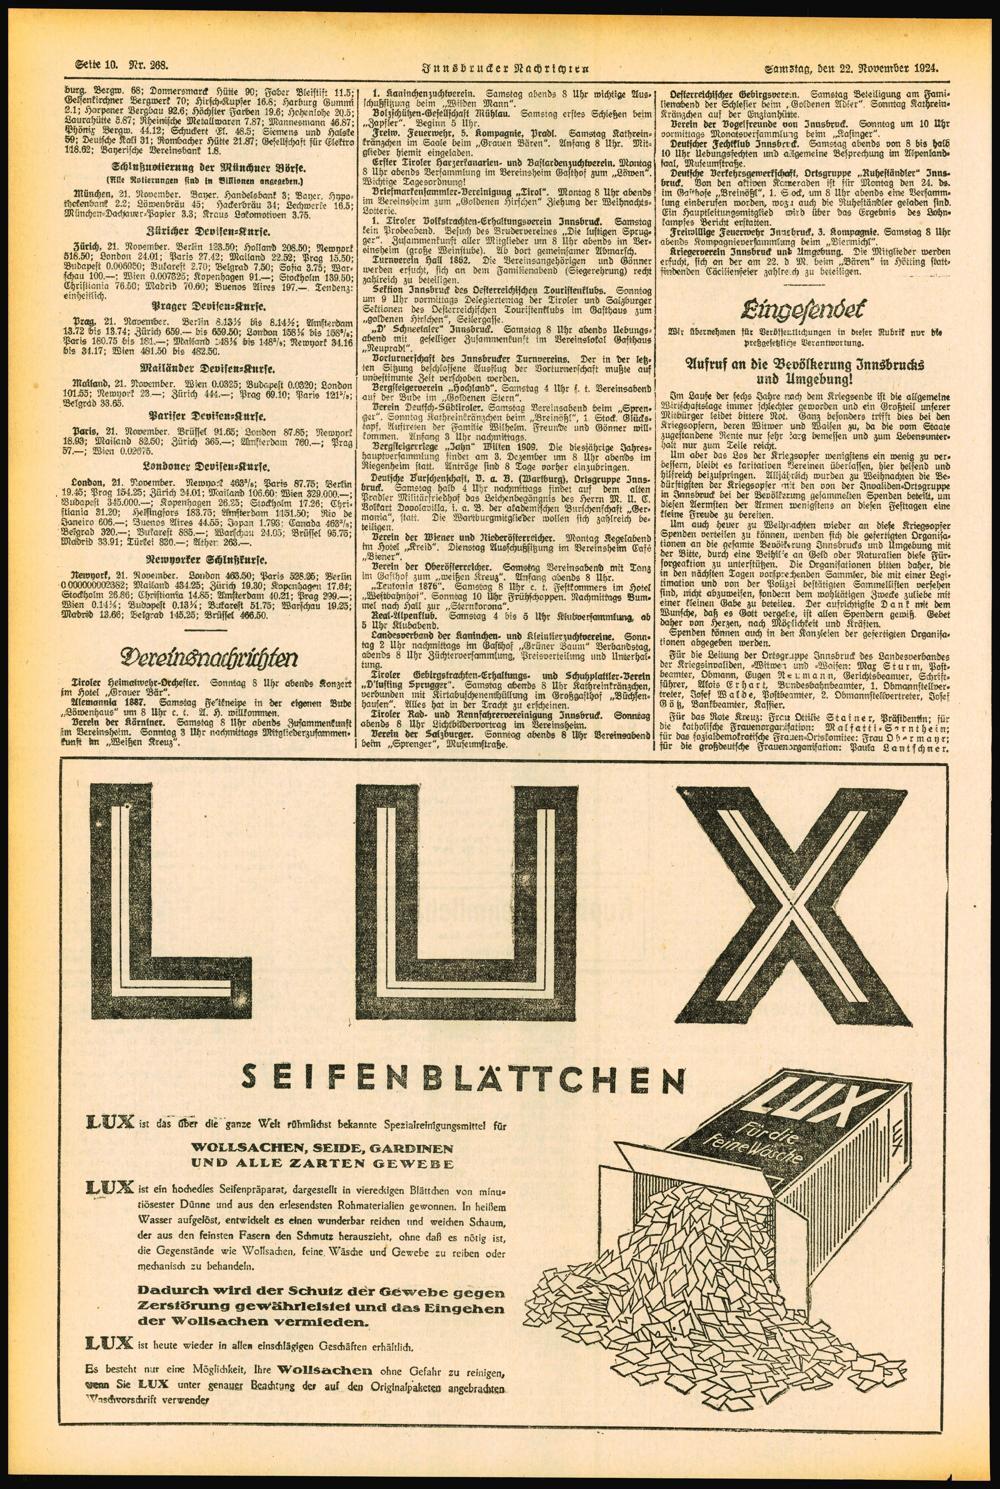 Seite 10. Nr. 268, Innsbrucker Nachrichten Samstag, den 22. November 1924. Lura, Bcrpx 68; Donnersmarck HM«90; Faber Bleistift 11.5; Gelsen kirchner Bergwerk 70; chirsch-kupfer 16.8; Harburg Gummi ß.